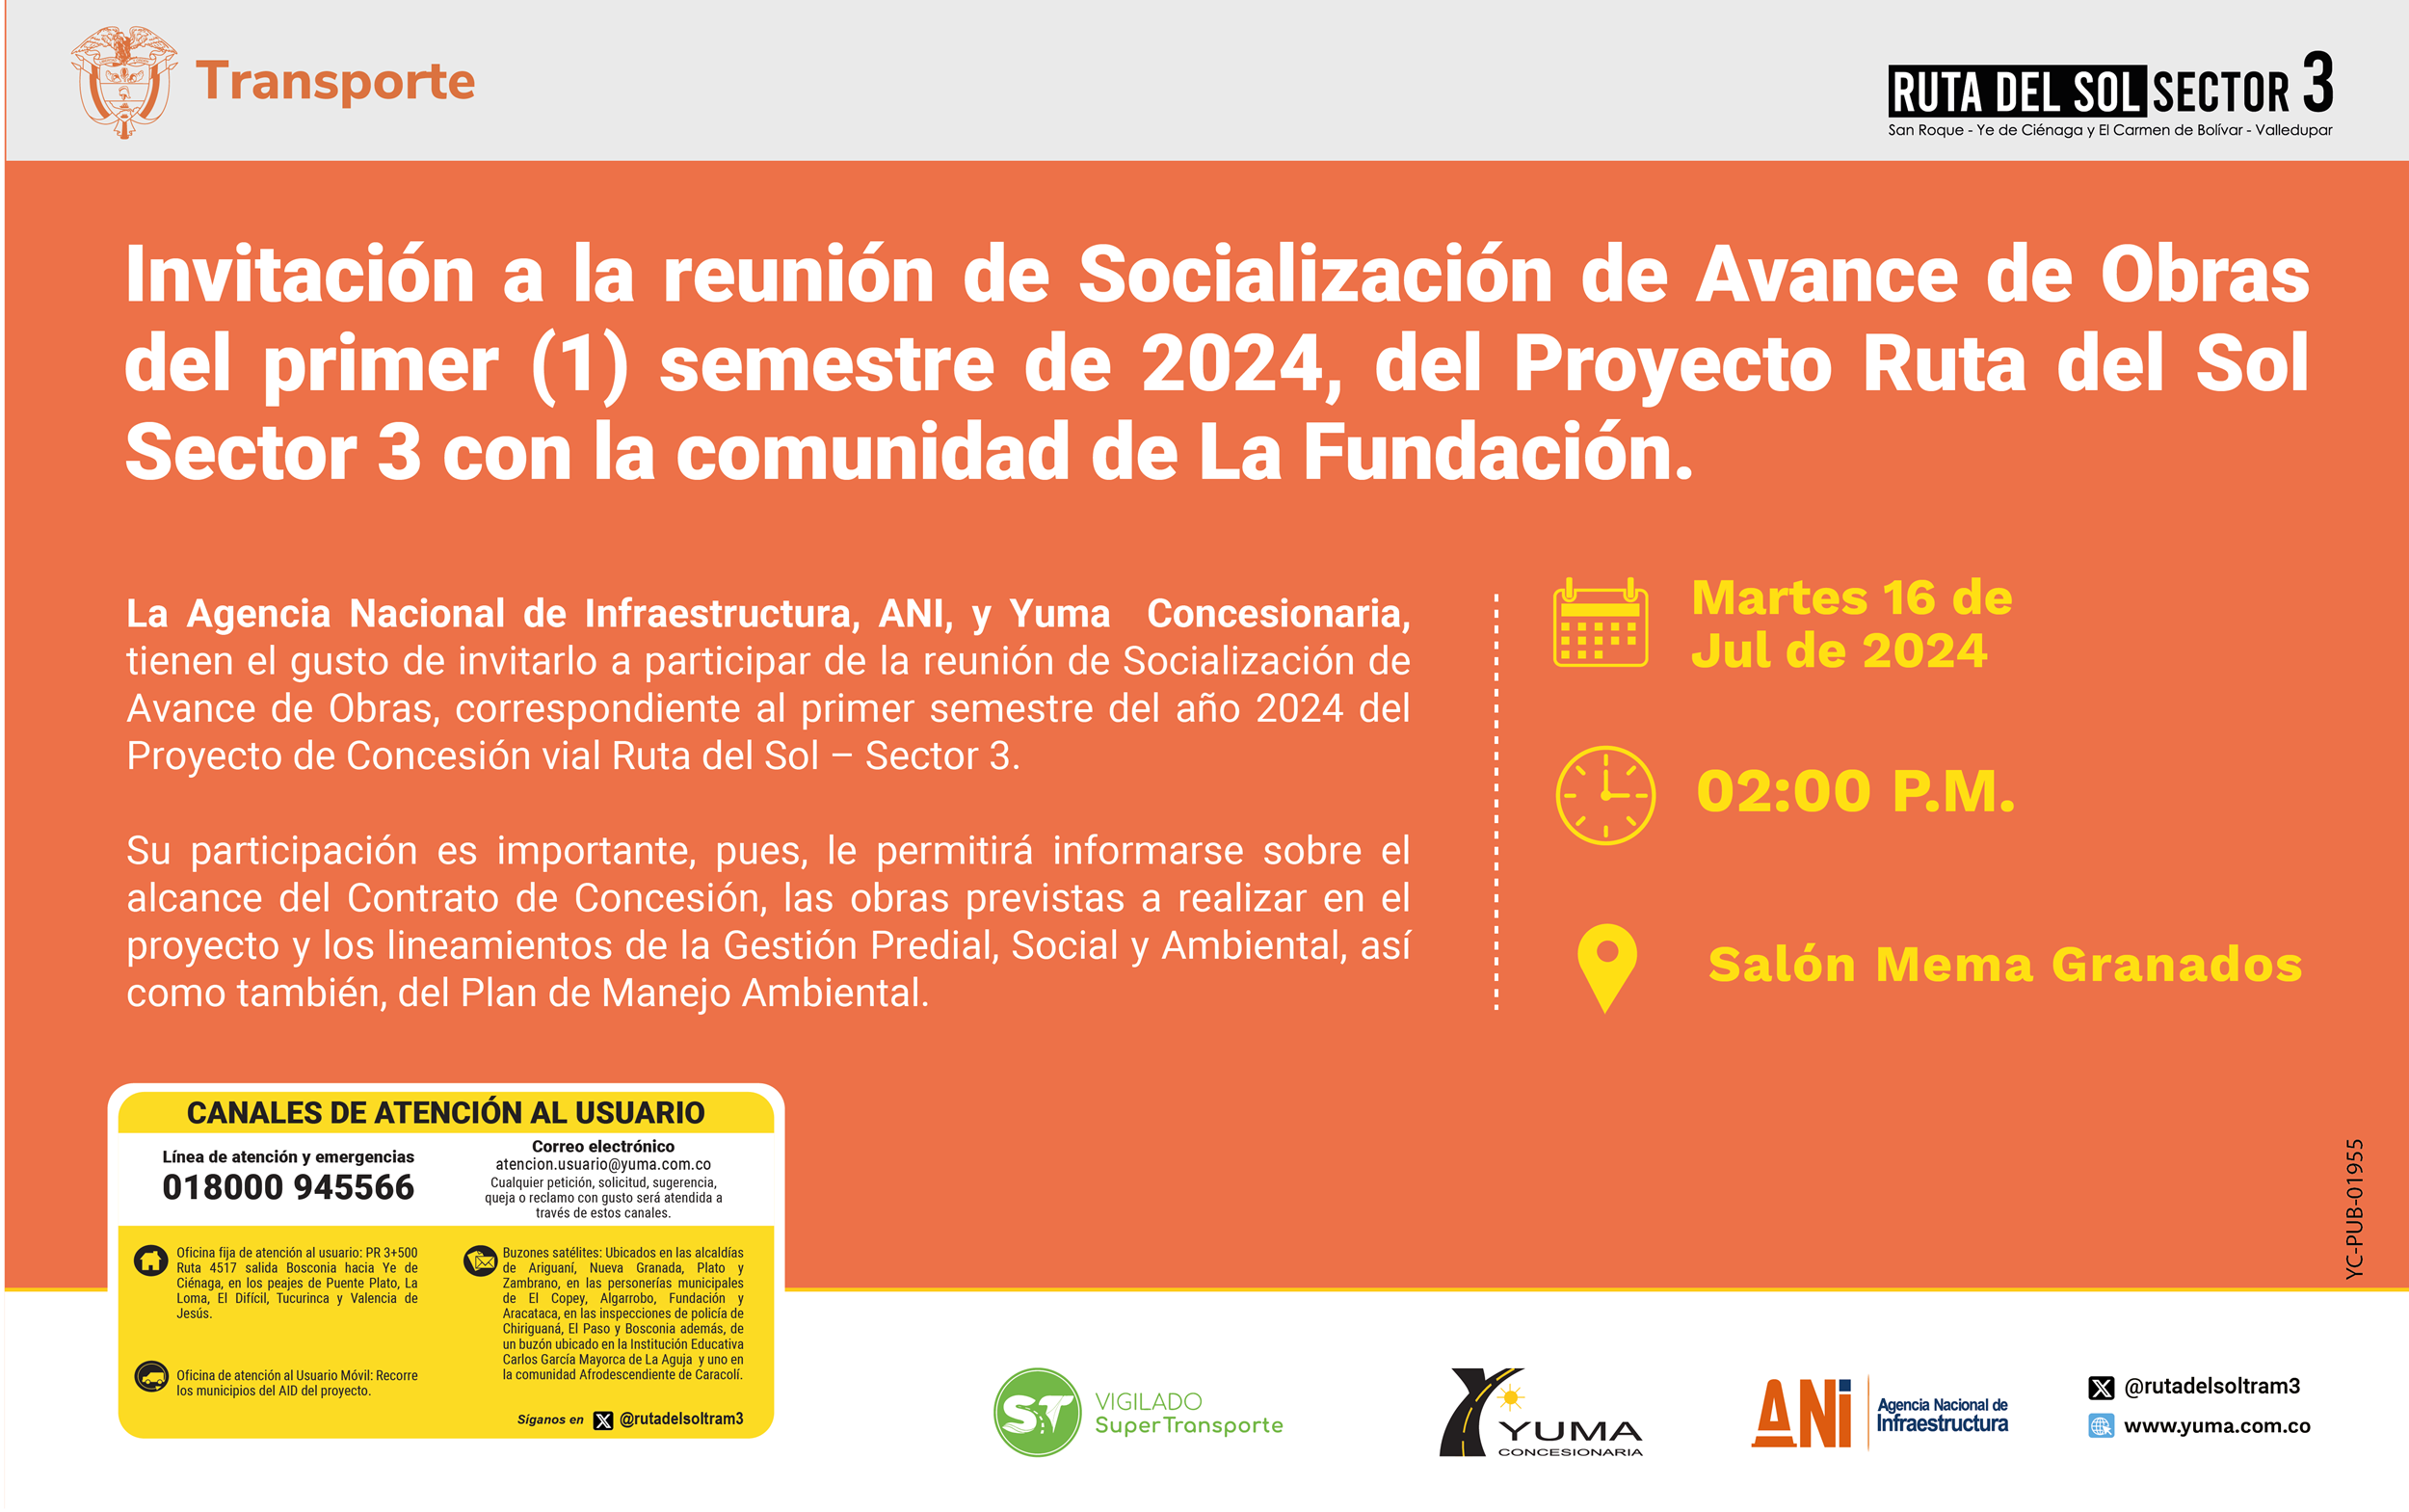 En este momento estás viendo Invitación a la reunión de Socialización de Avance de Obras del primer semestre de 2024 con la comunidad de Fundación